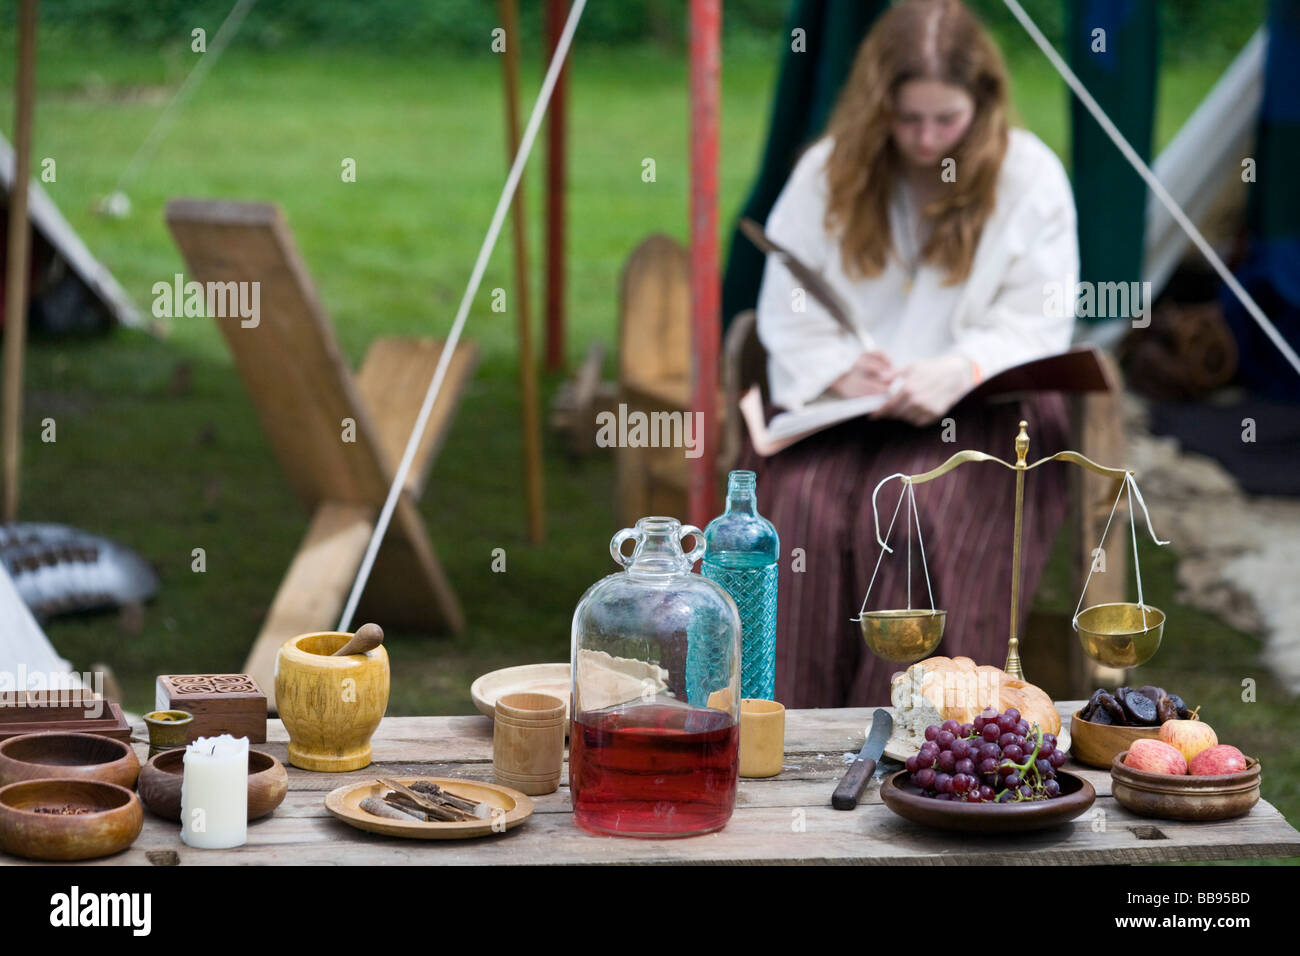 A reenactor dressed as a  medieval herbalist, Tewkesbury Medieval Festival 2008, Gloucestershire, UK Stock Photo